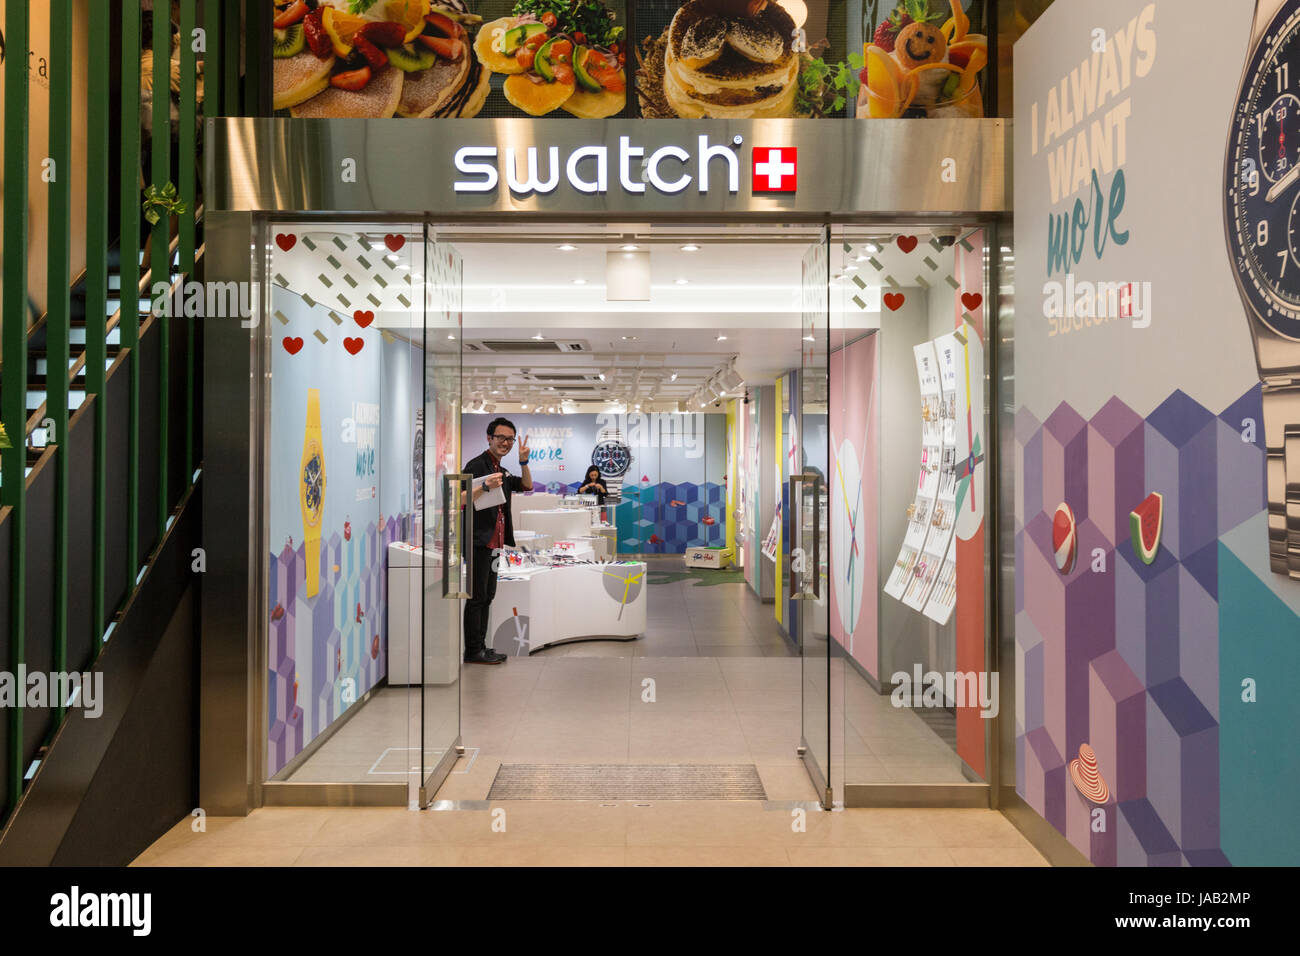 Swatch watch shop Banque de photographies et d'images à haute résolution -  Alamy